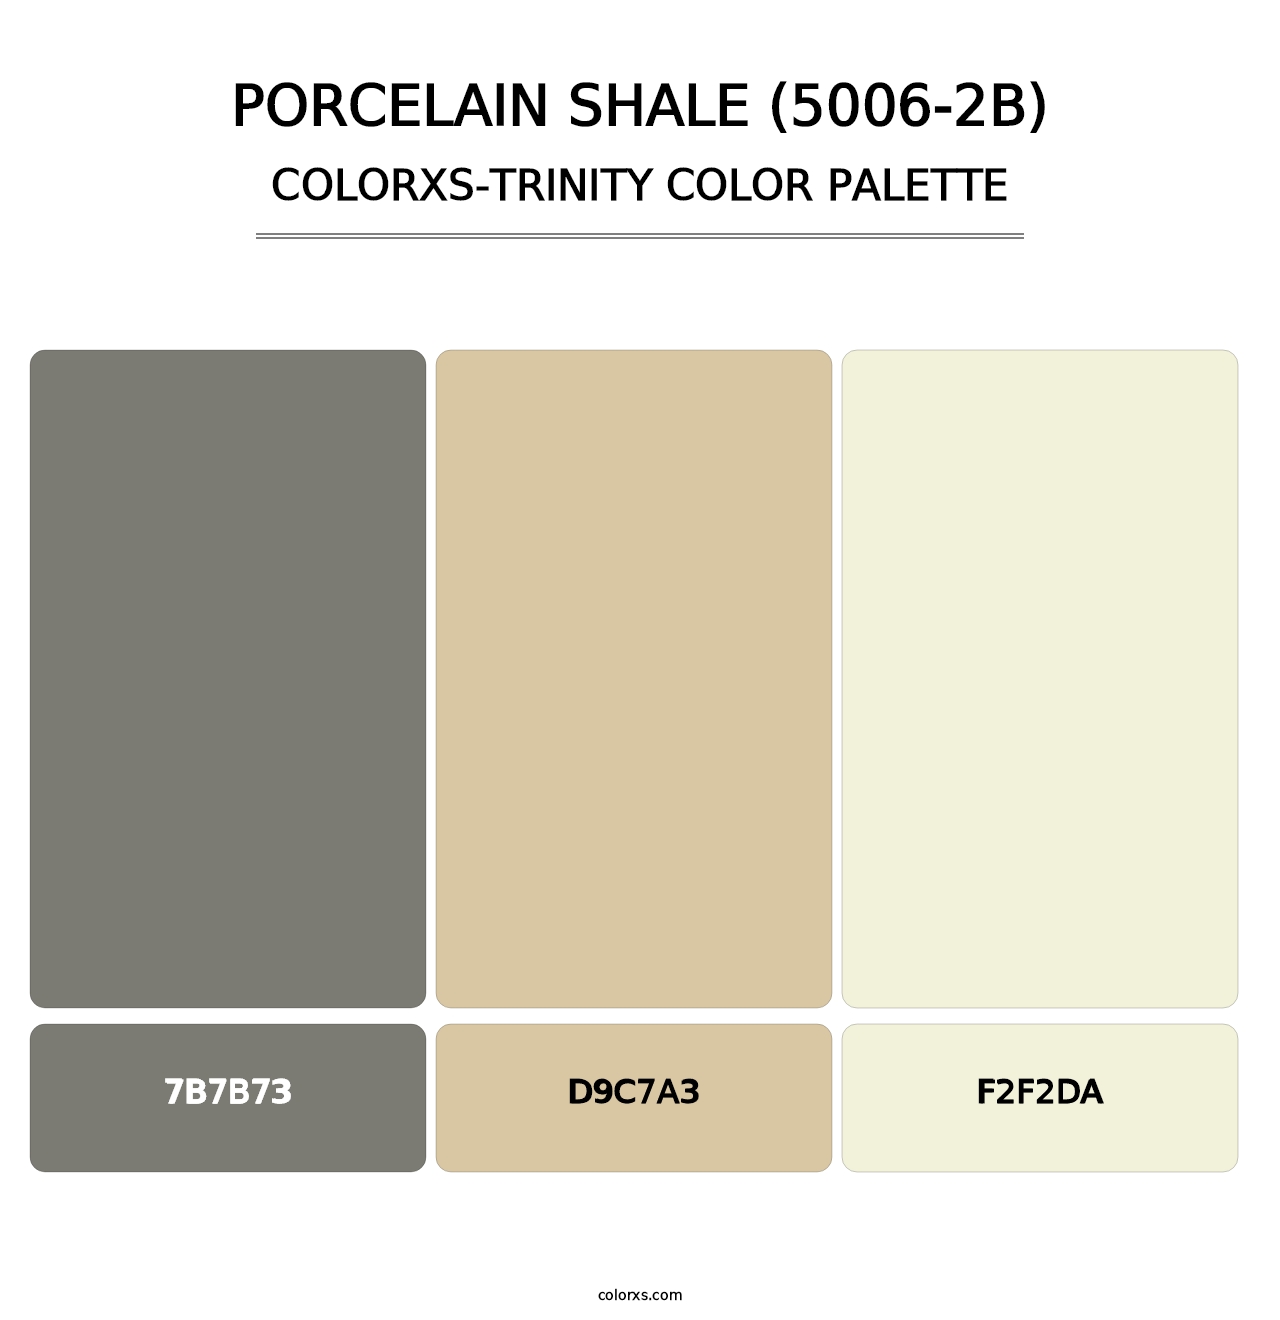 Porcelain Shale (5006-2B) - Colorxs Trinity Palette